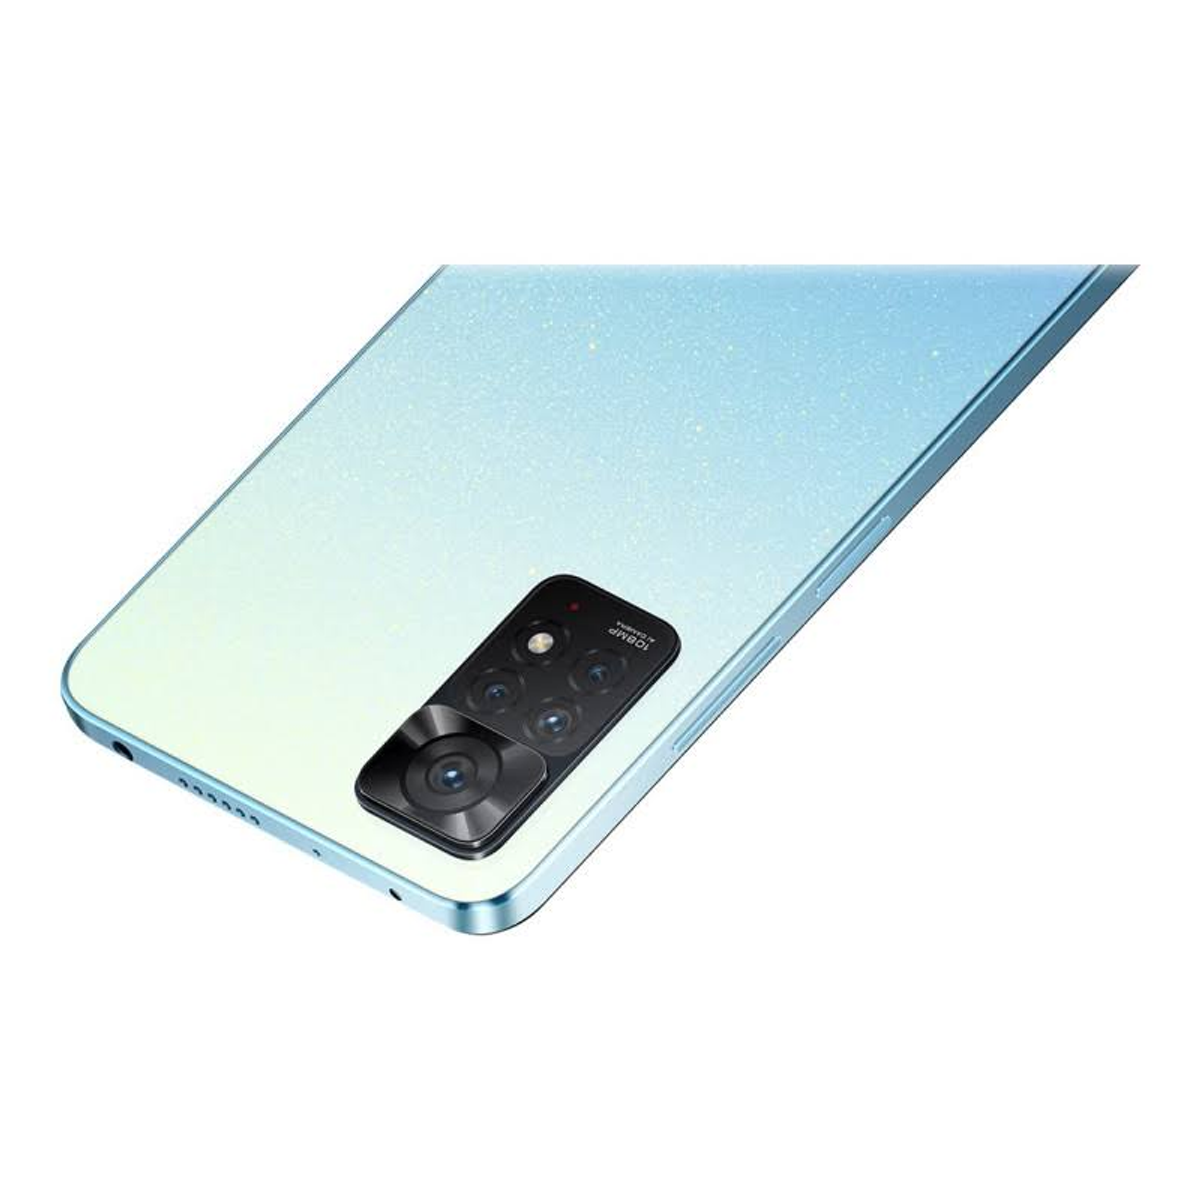 GB SIM Note 64,00 11 Dual Pro Redmi Blau XIAOMI